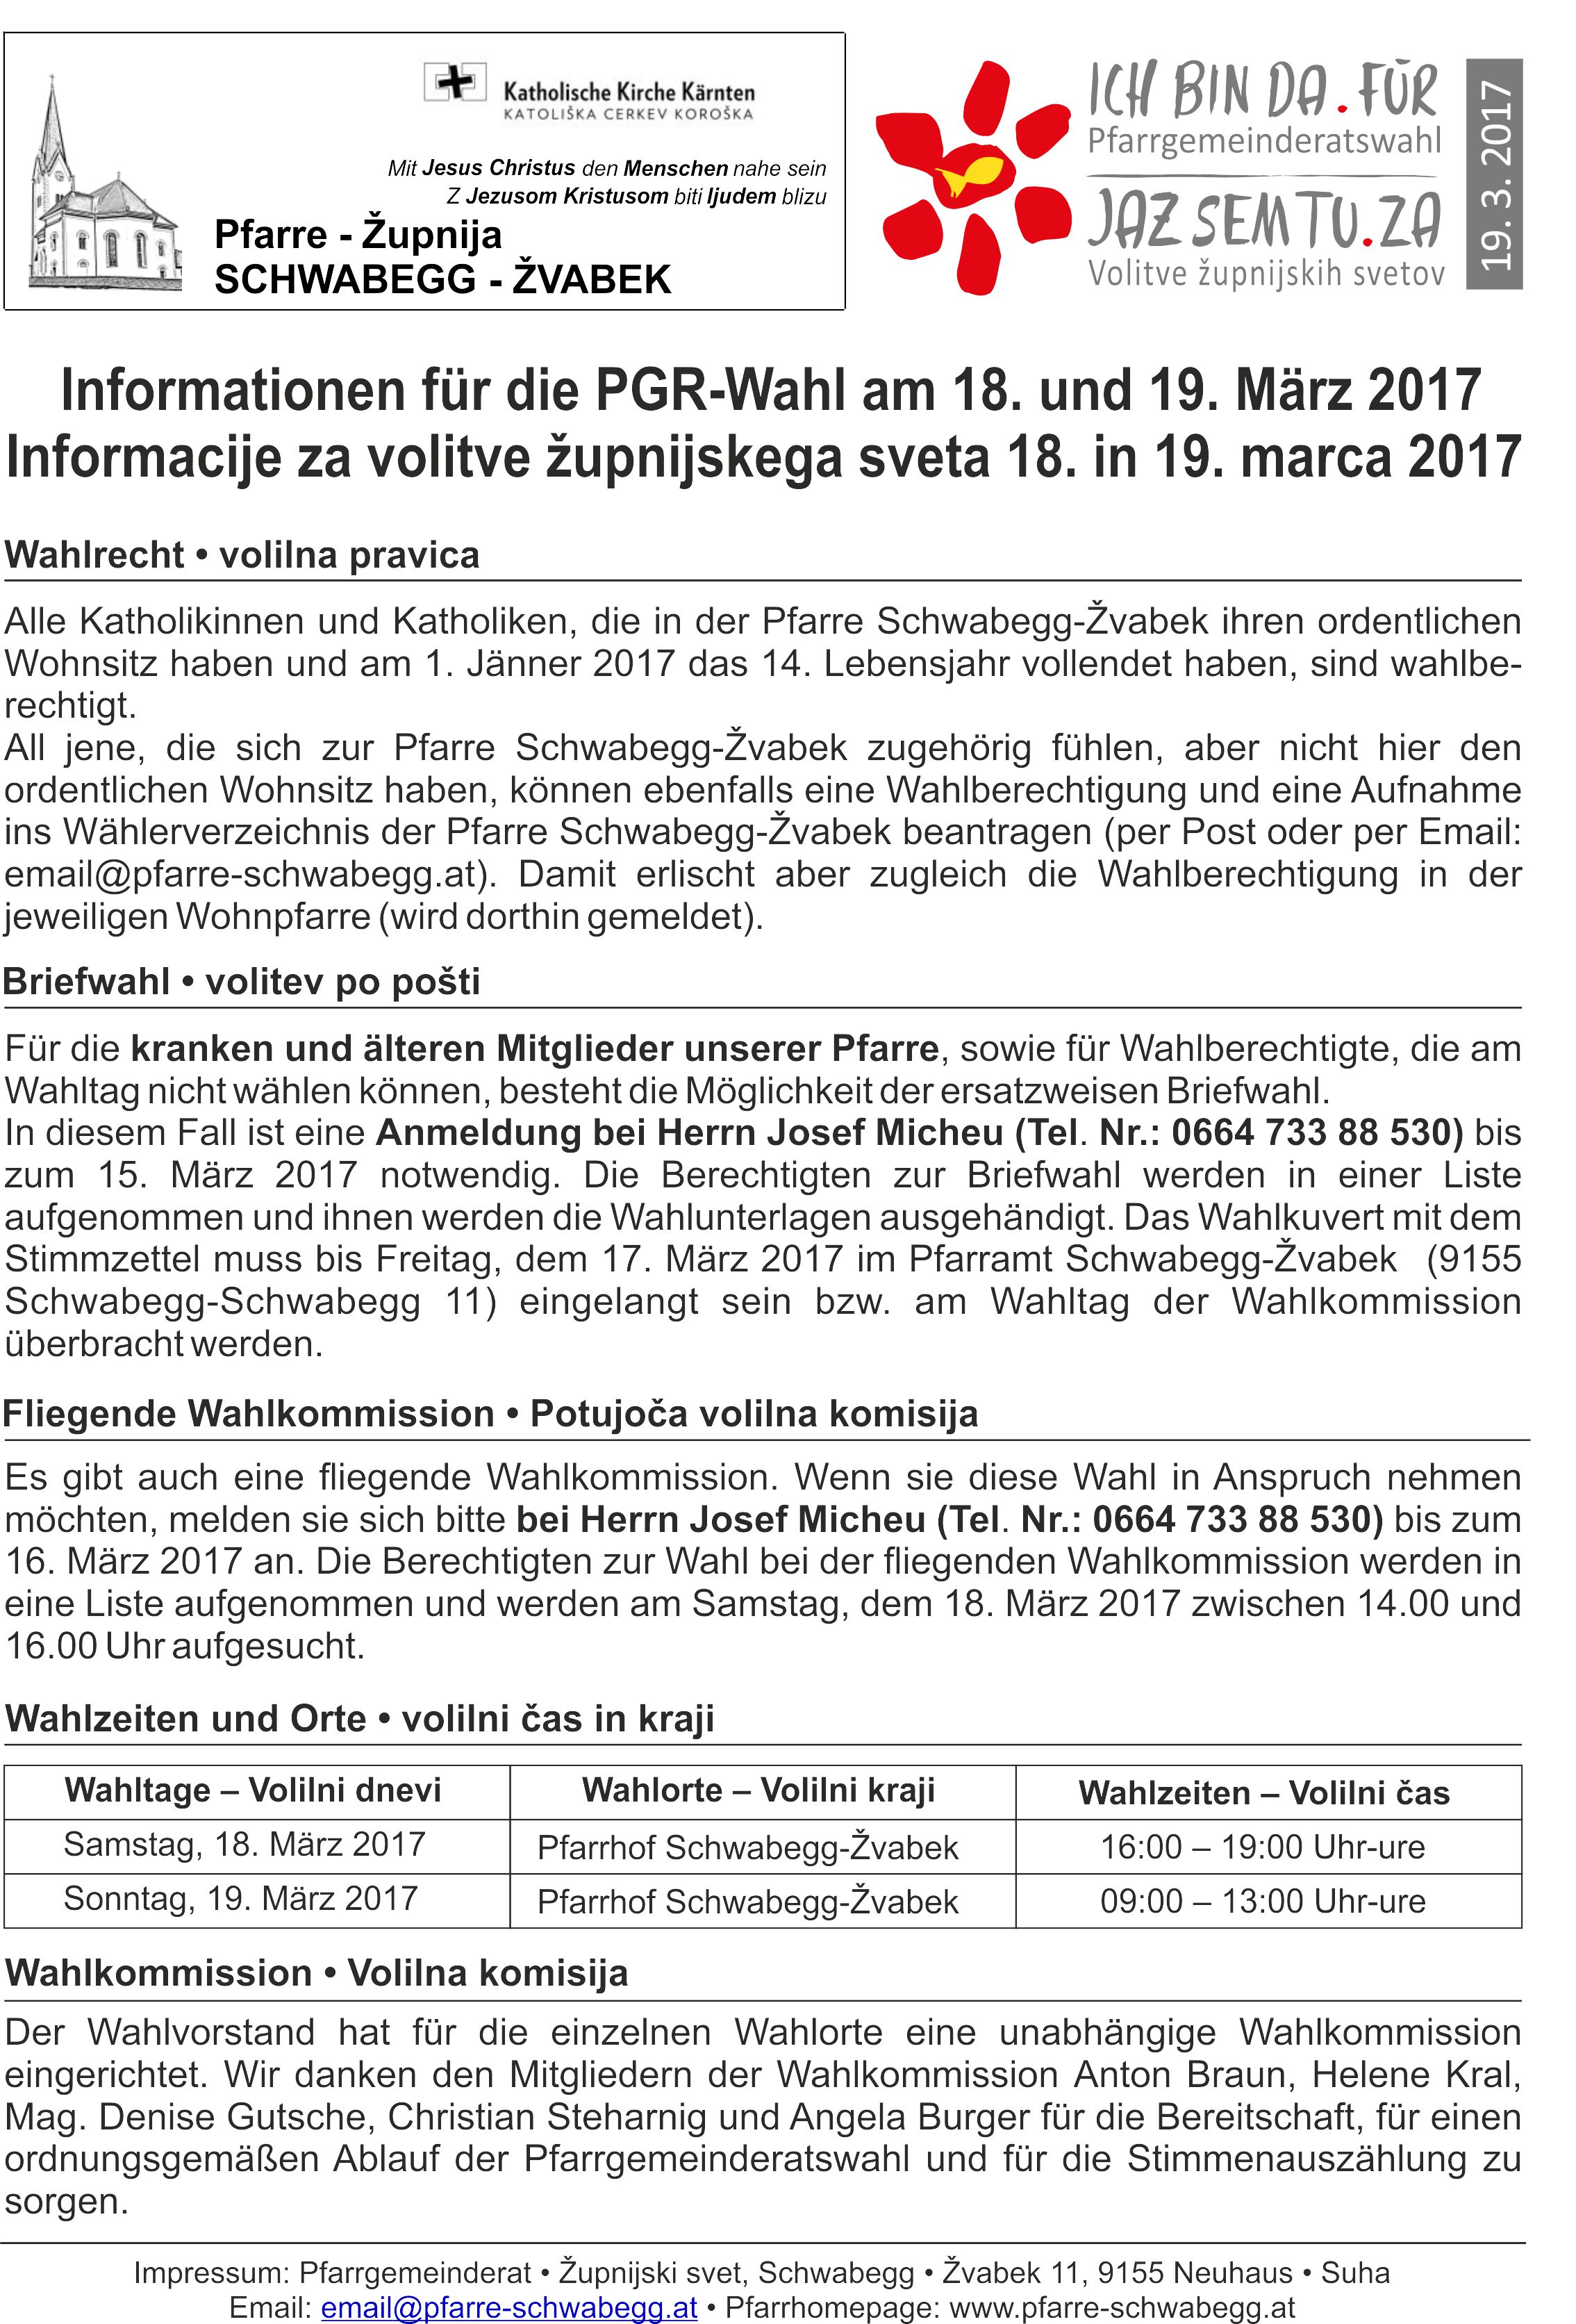 Information PGR Wahl 2017 I